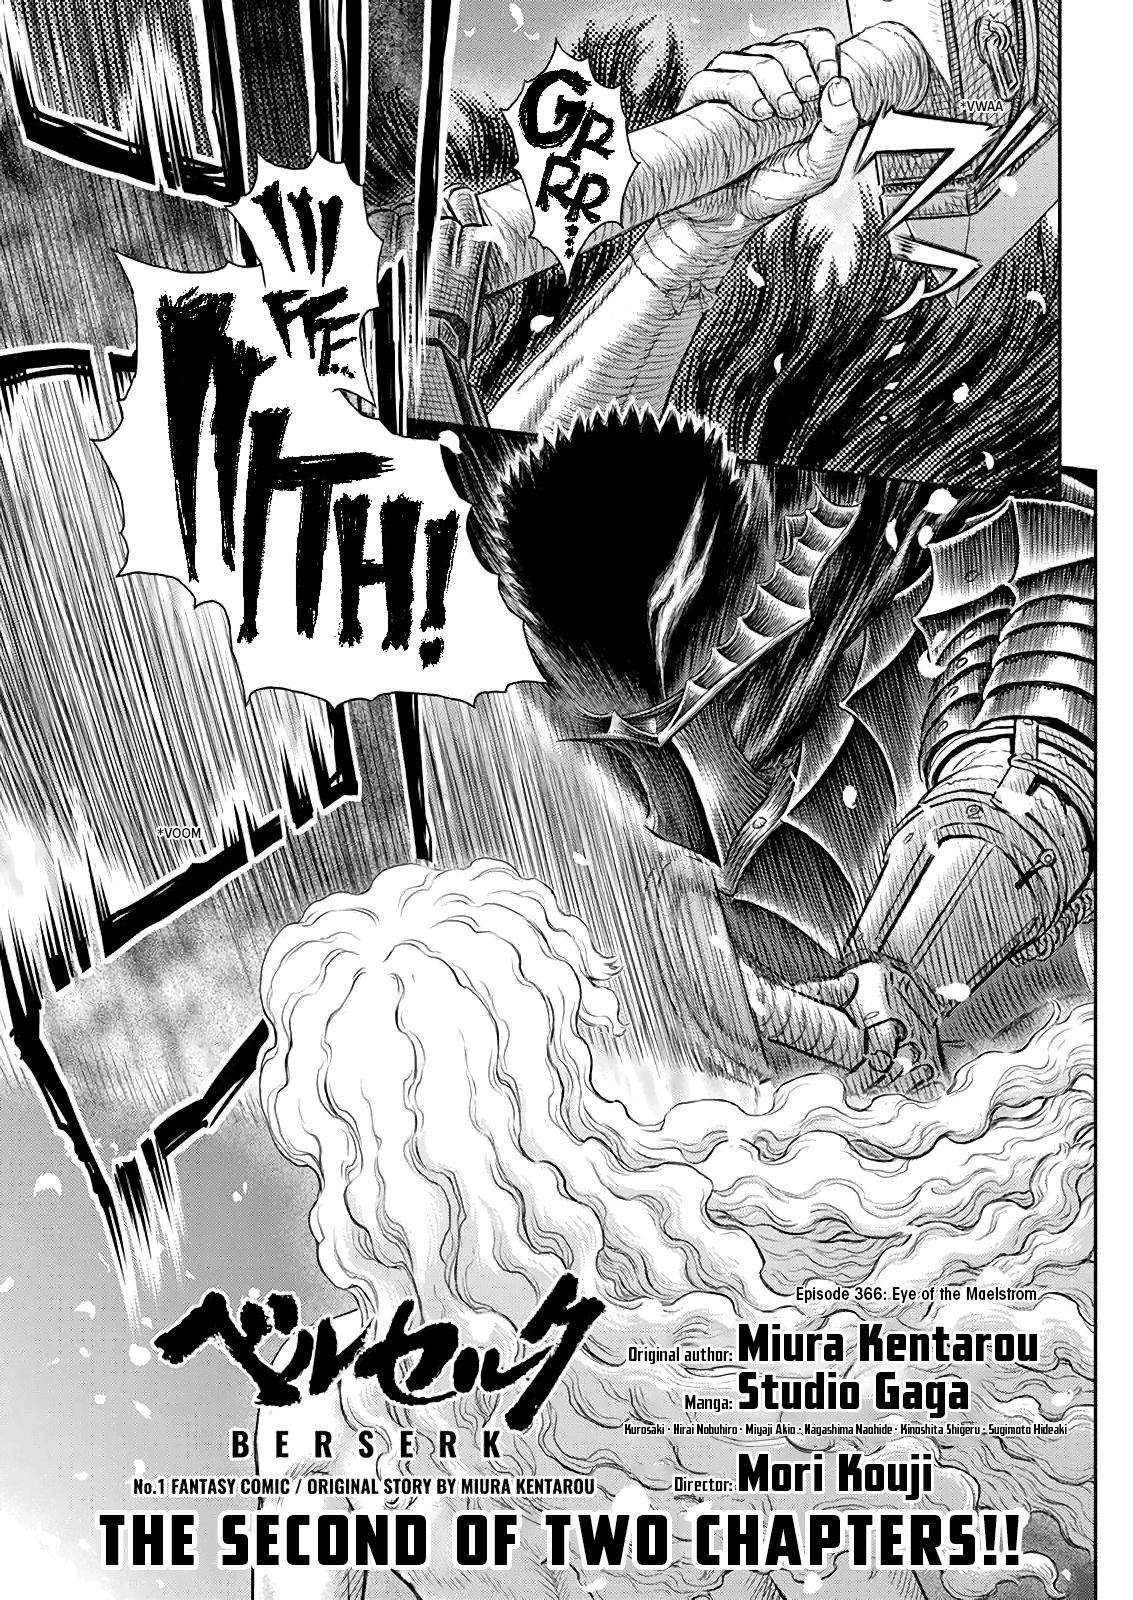 Berserk Manga Chapter 366 image 01